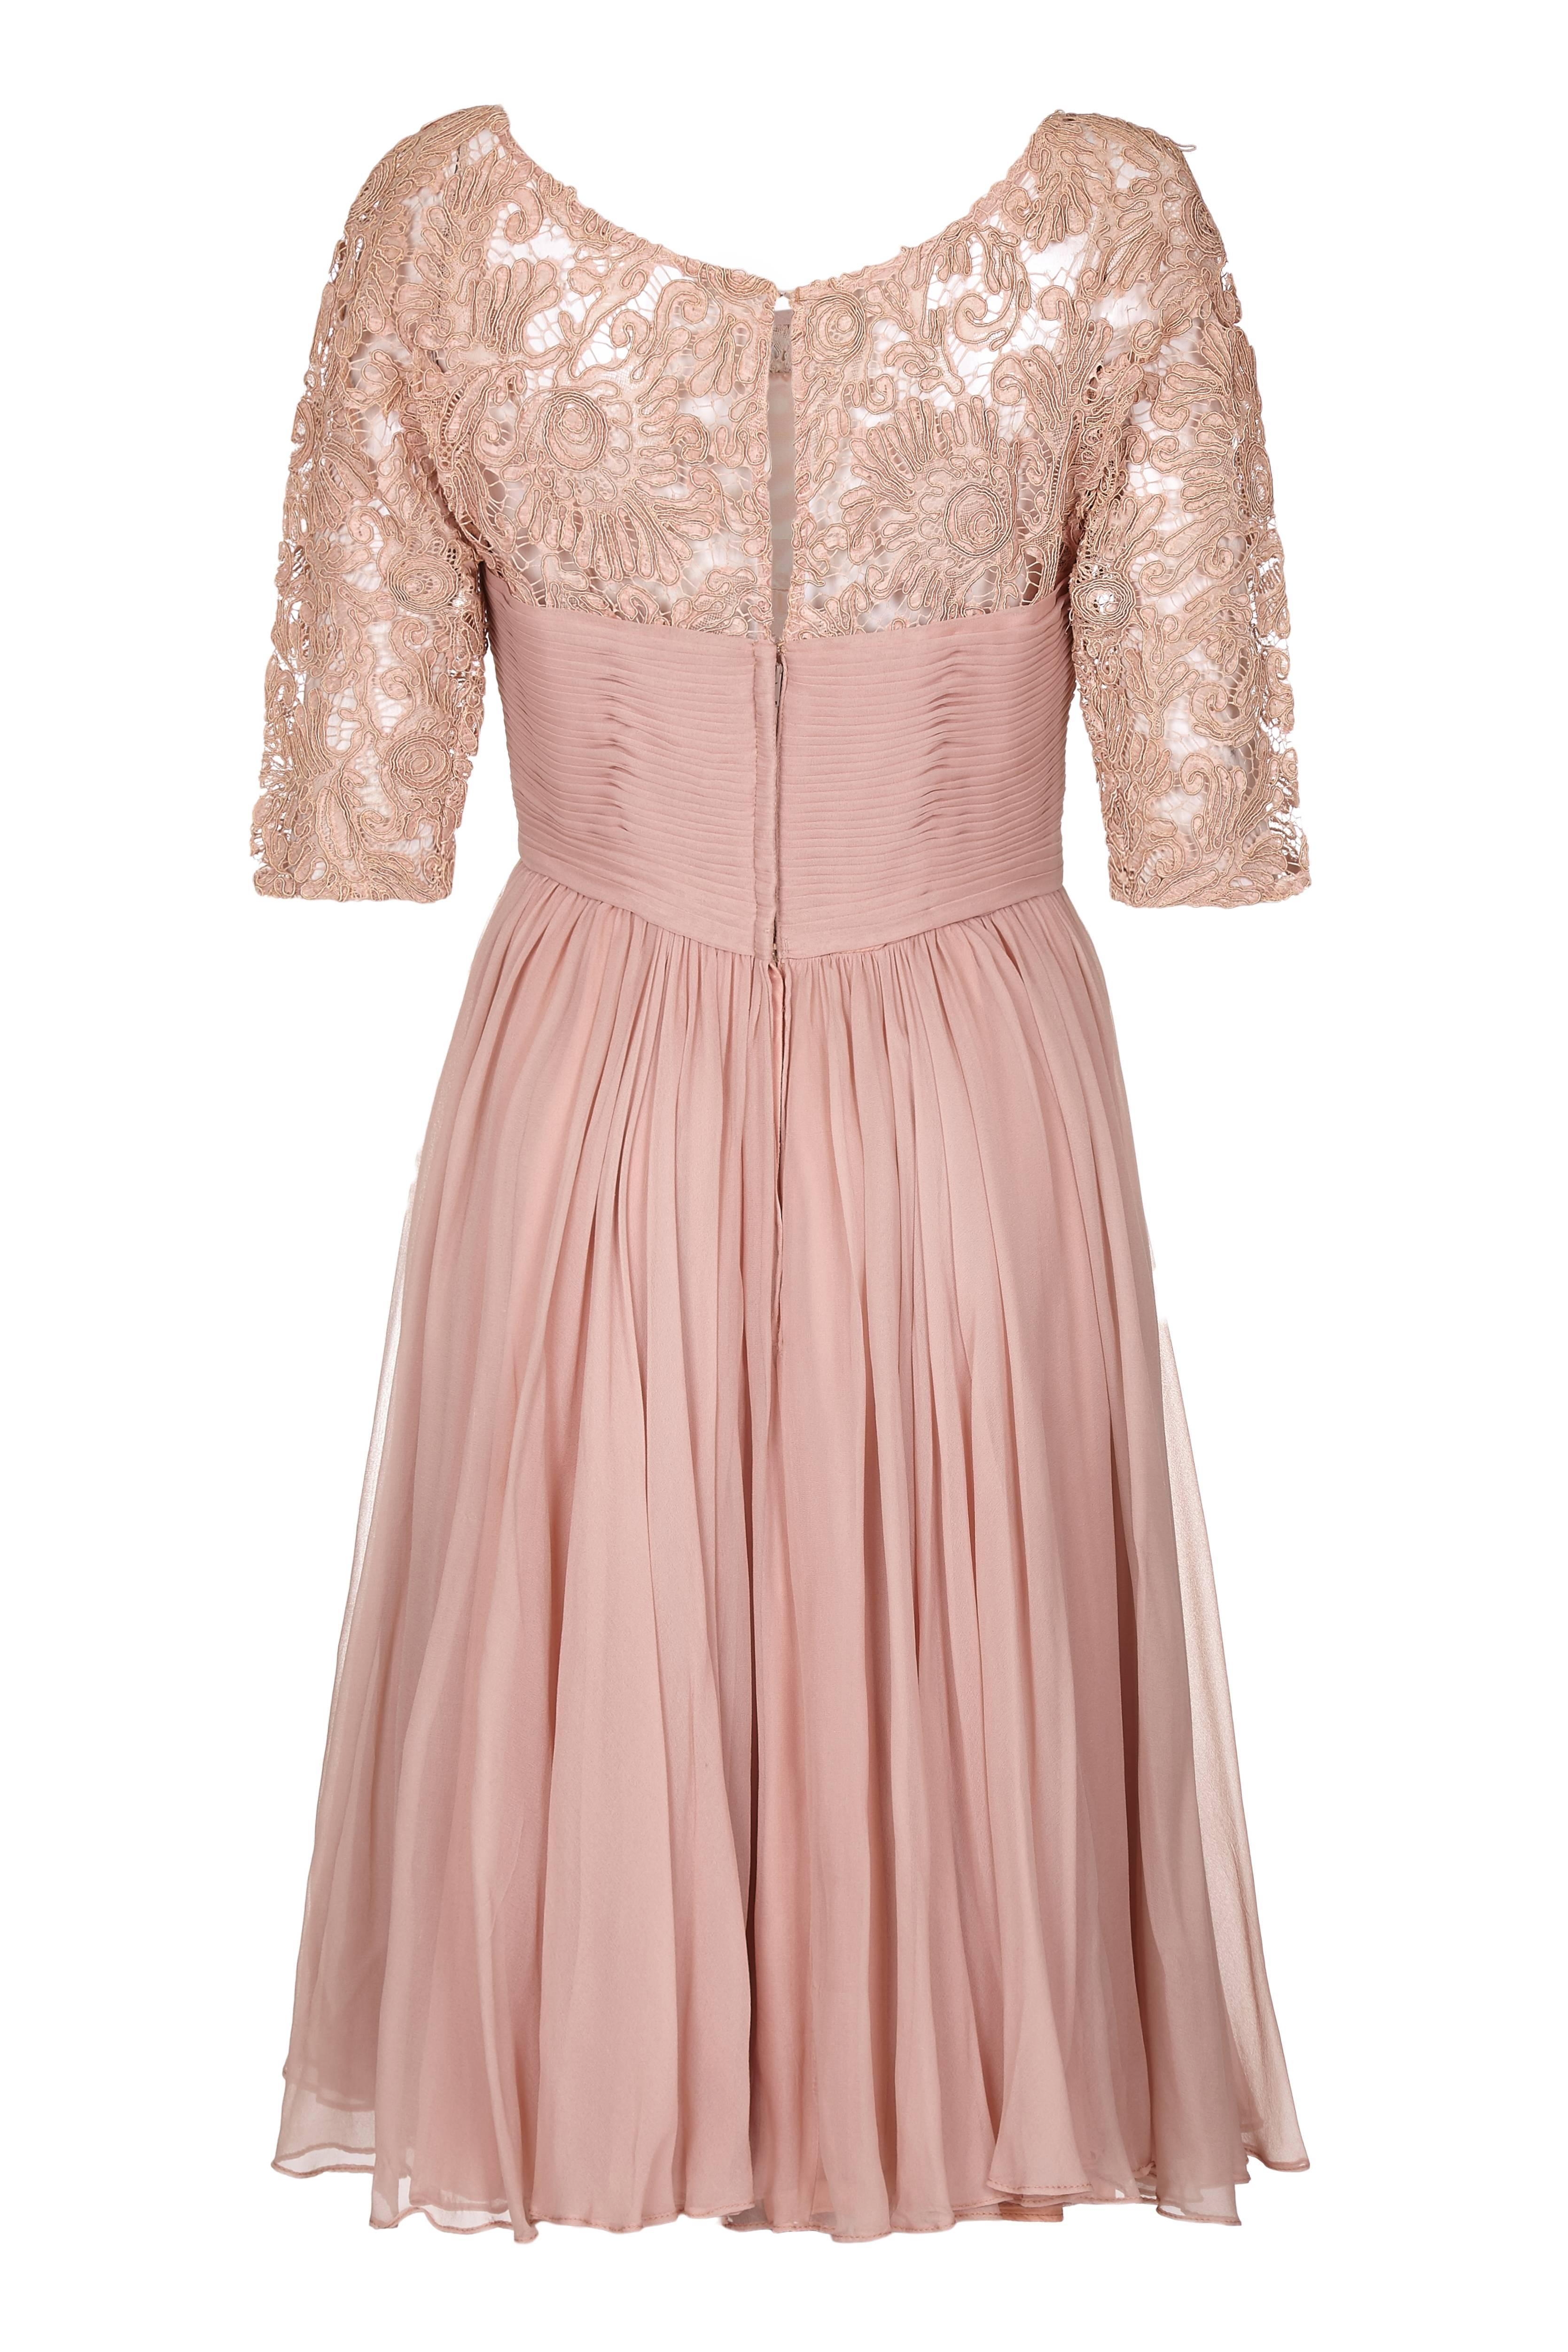 Dieses bezaubernde Edward Abbott Kleid aus den 1950er Jahren aus Spitze und Seidenchiffon in Altrosa befindet sich in einem ausgezeichneten Zustand und ist wunderschön verarbeitet. Es besteht aus einem taillierten Spitzenmieder mit 3/4-Ärmeln und